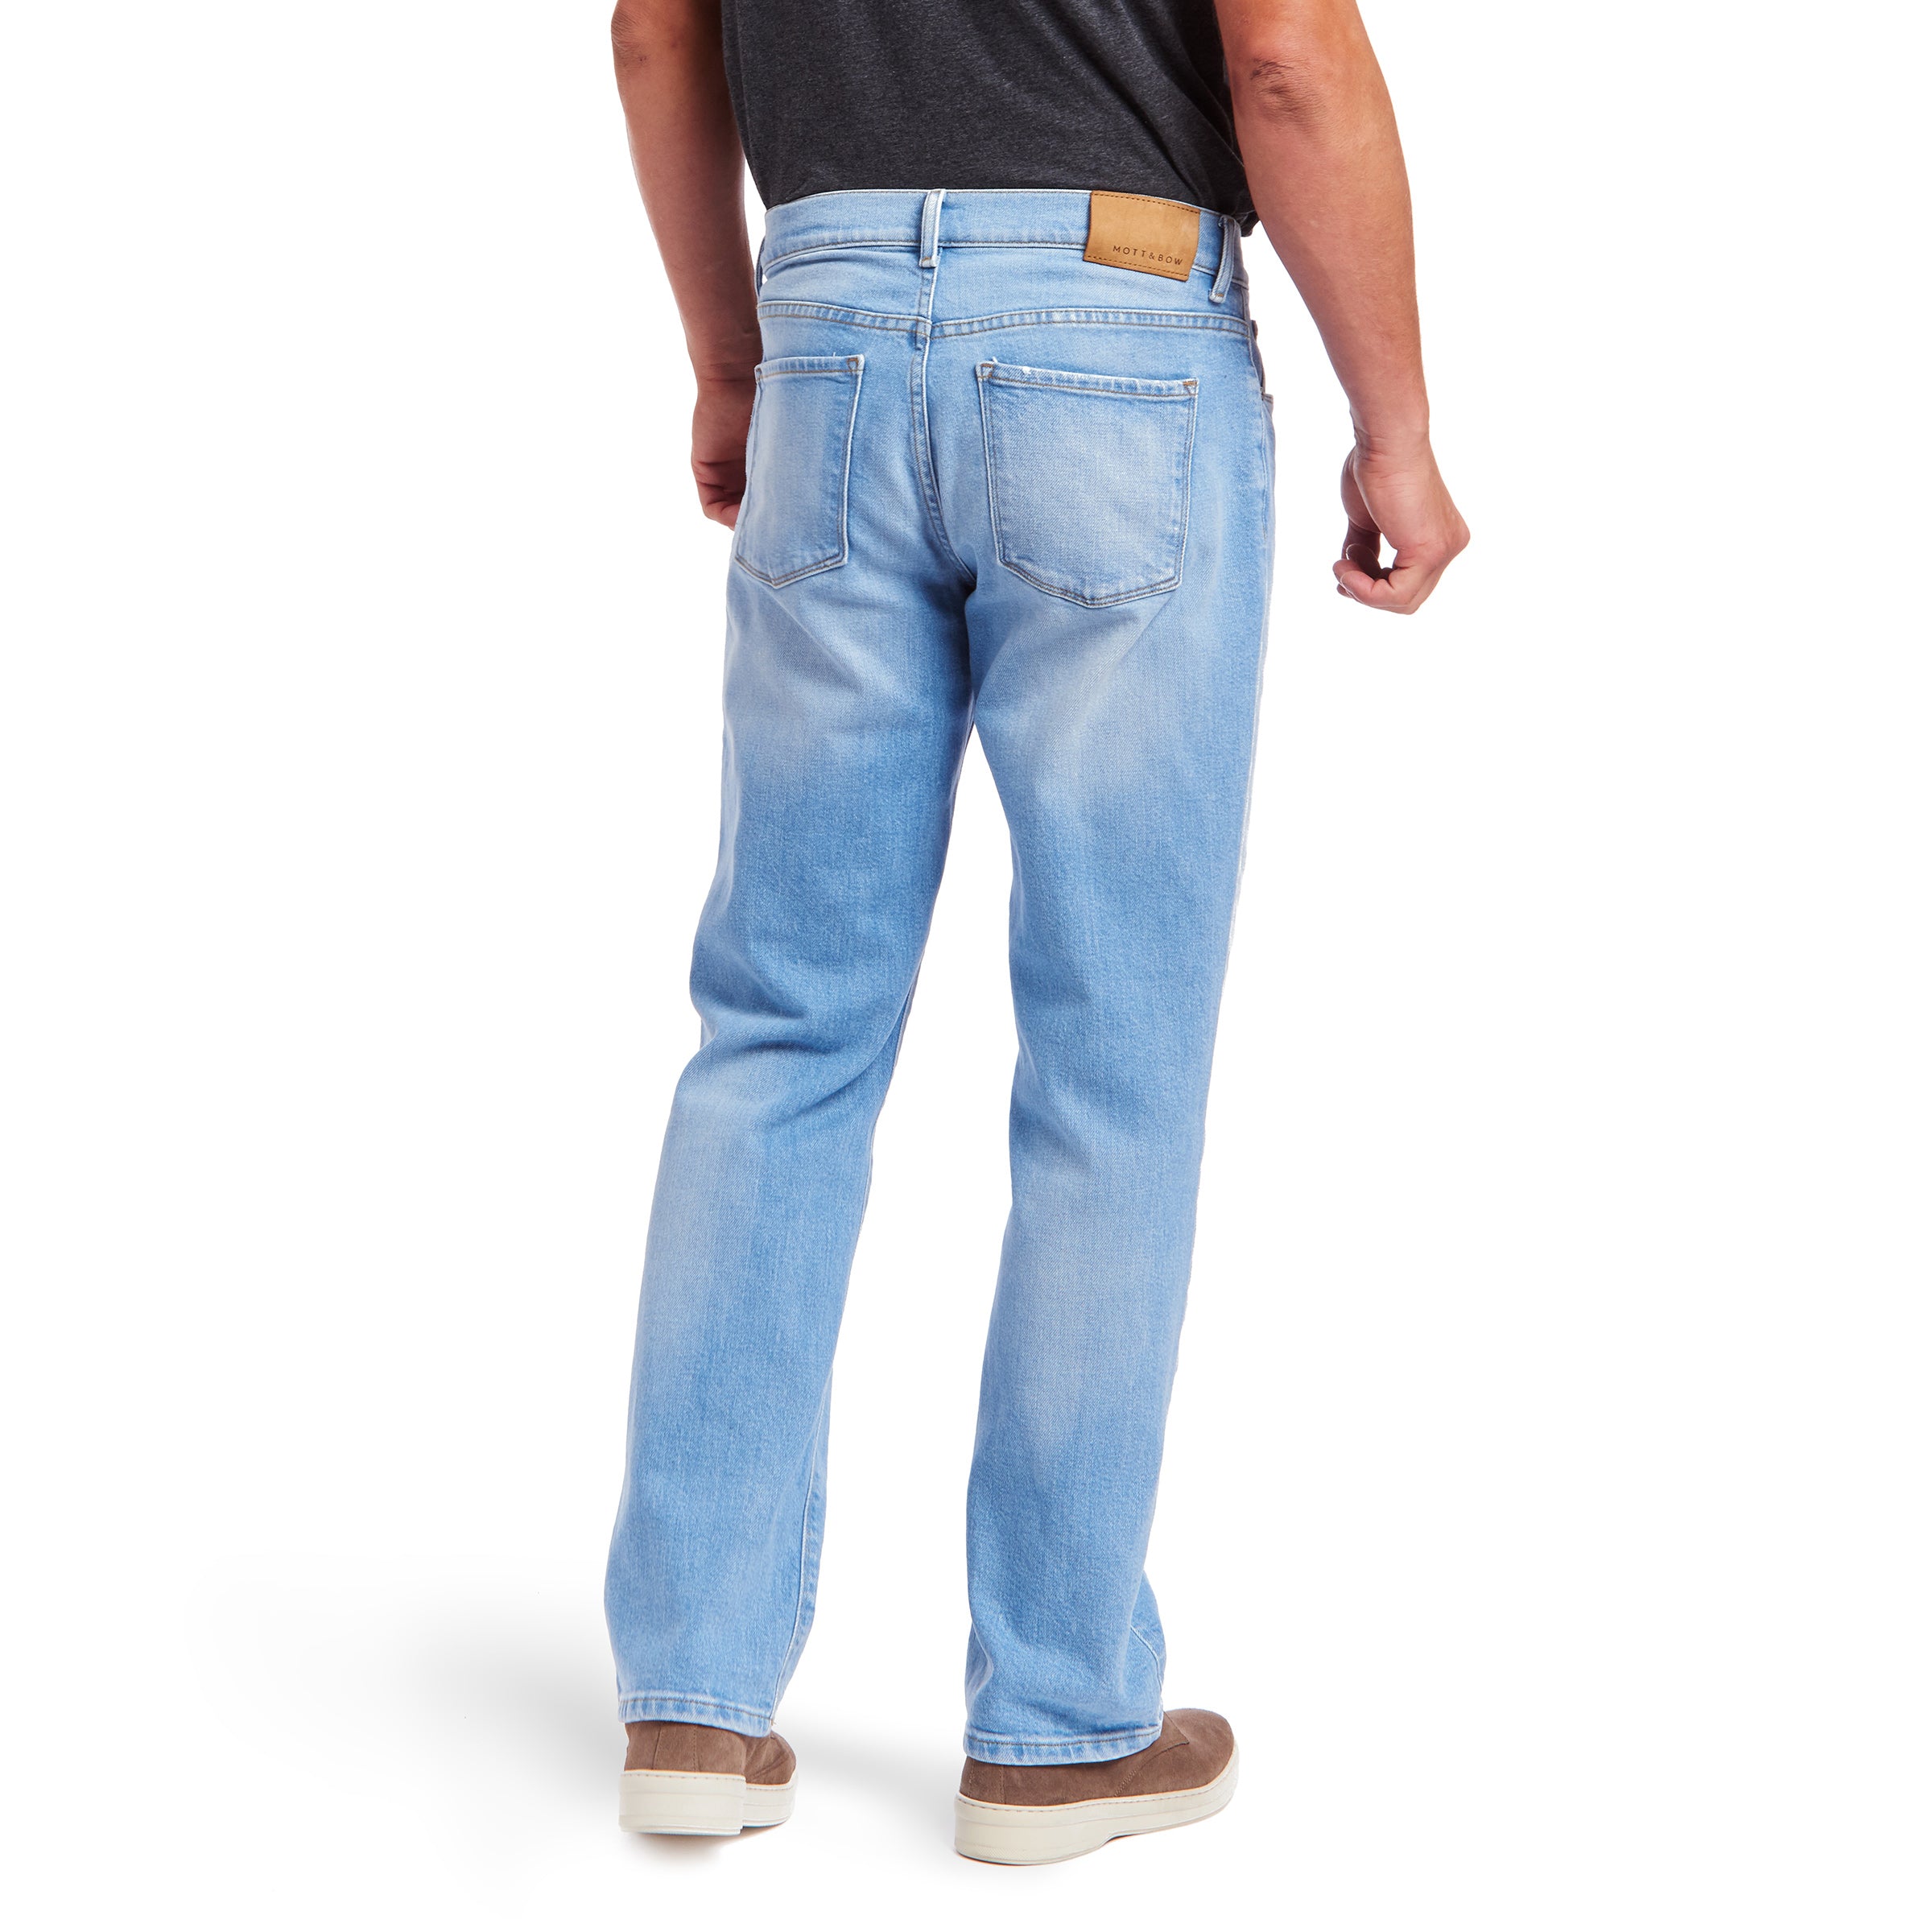 Men wearing Bleu Clair Straight Hubert Jeans